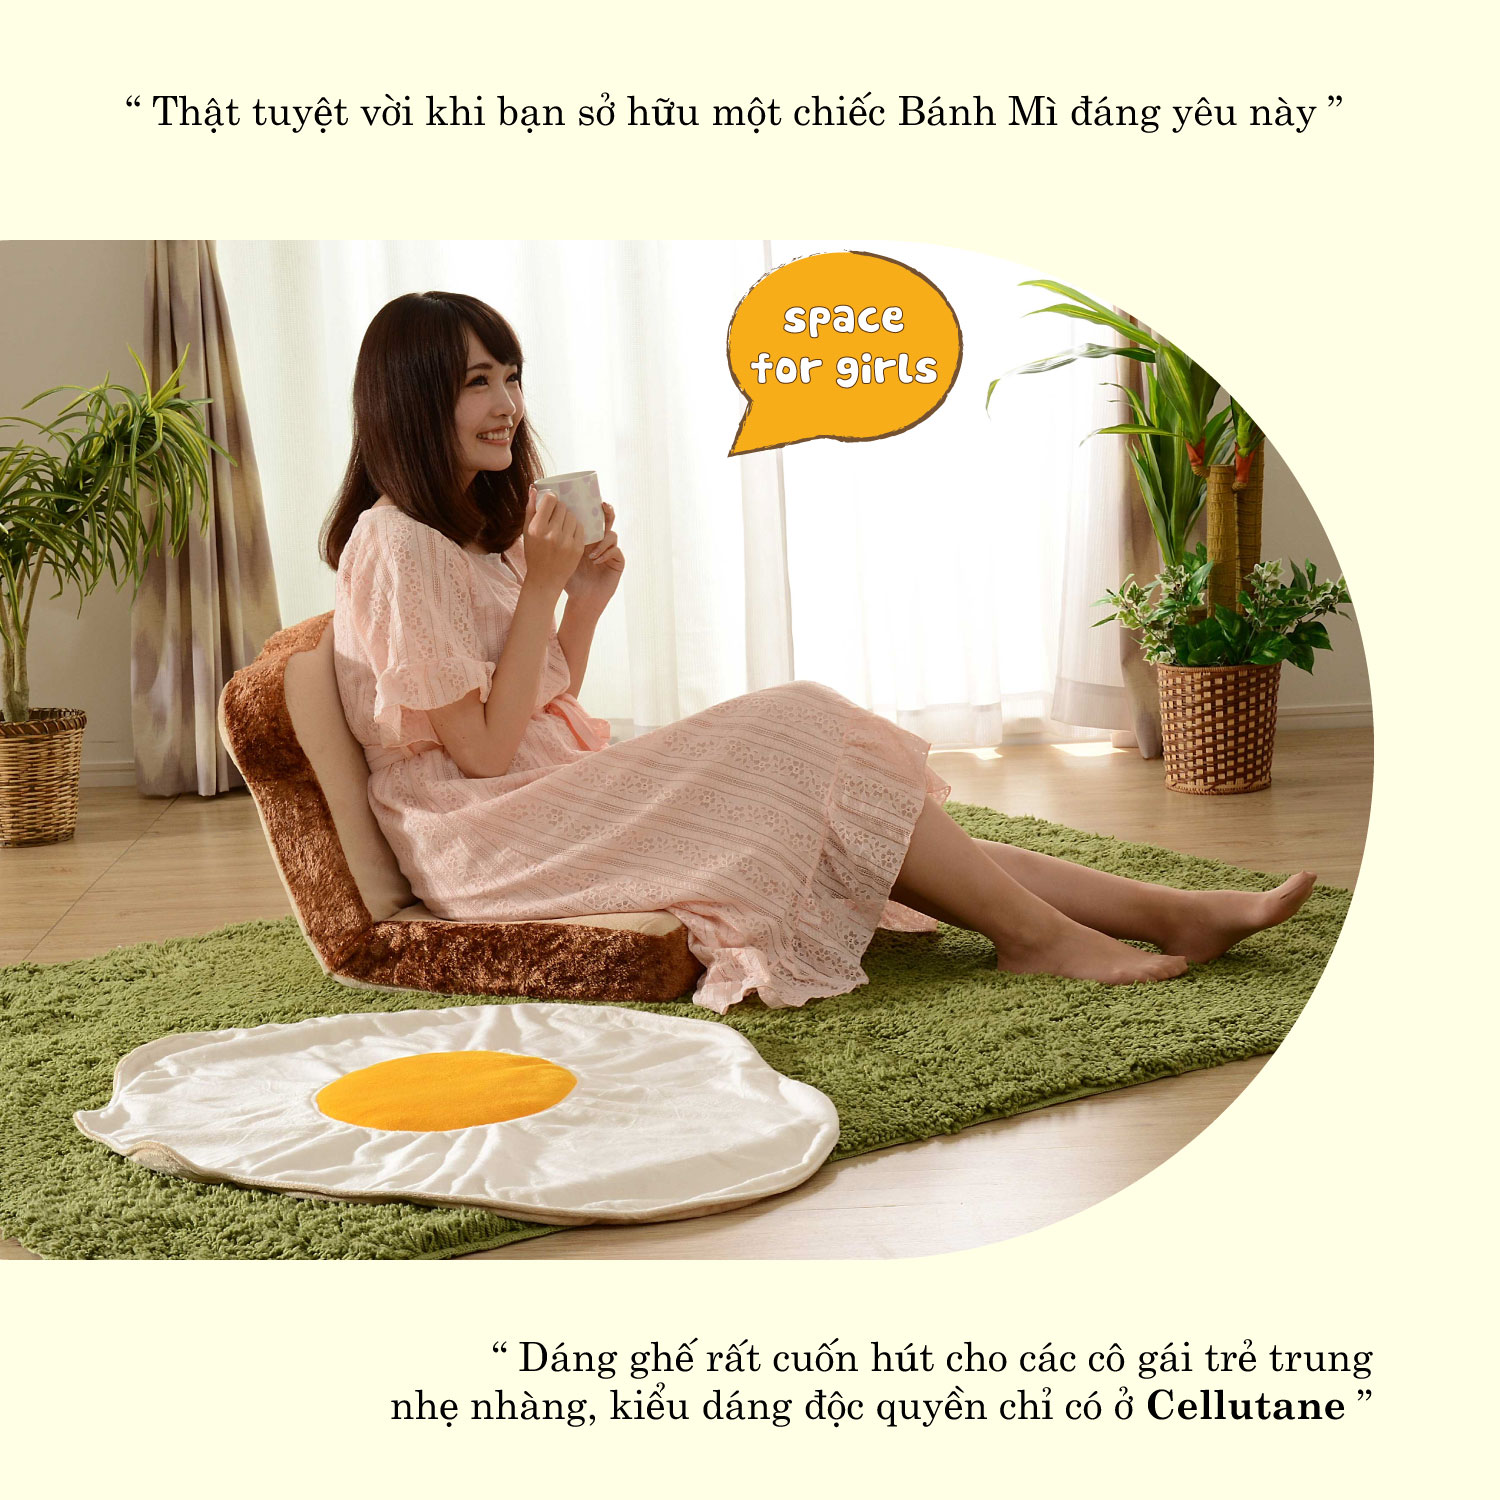 Ghế Tựa Lưng Nhật Bản PN1 Kiểu Dáng Bánh Mỳ Sandwich - Ghế tựa lưng thư giãn